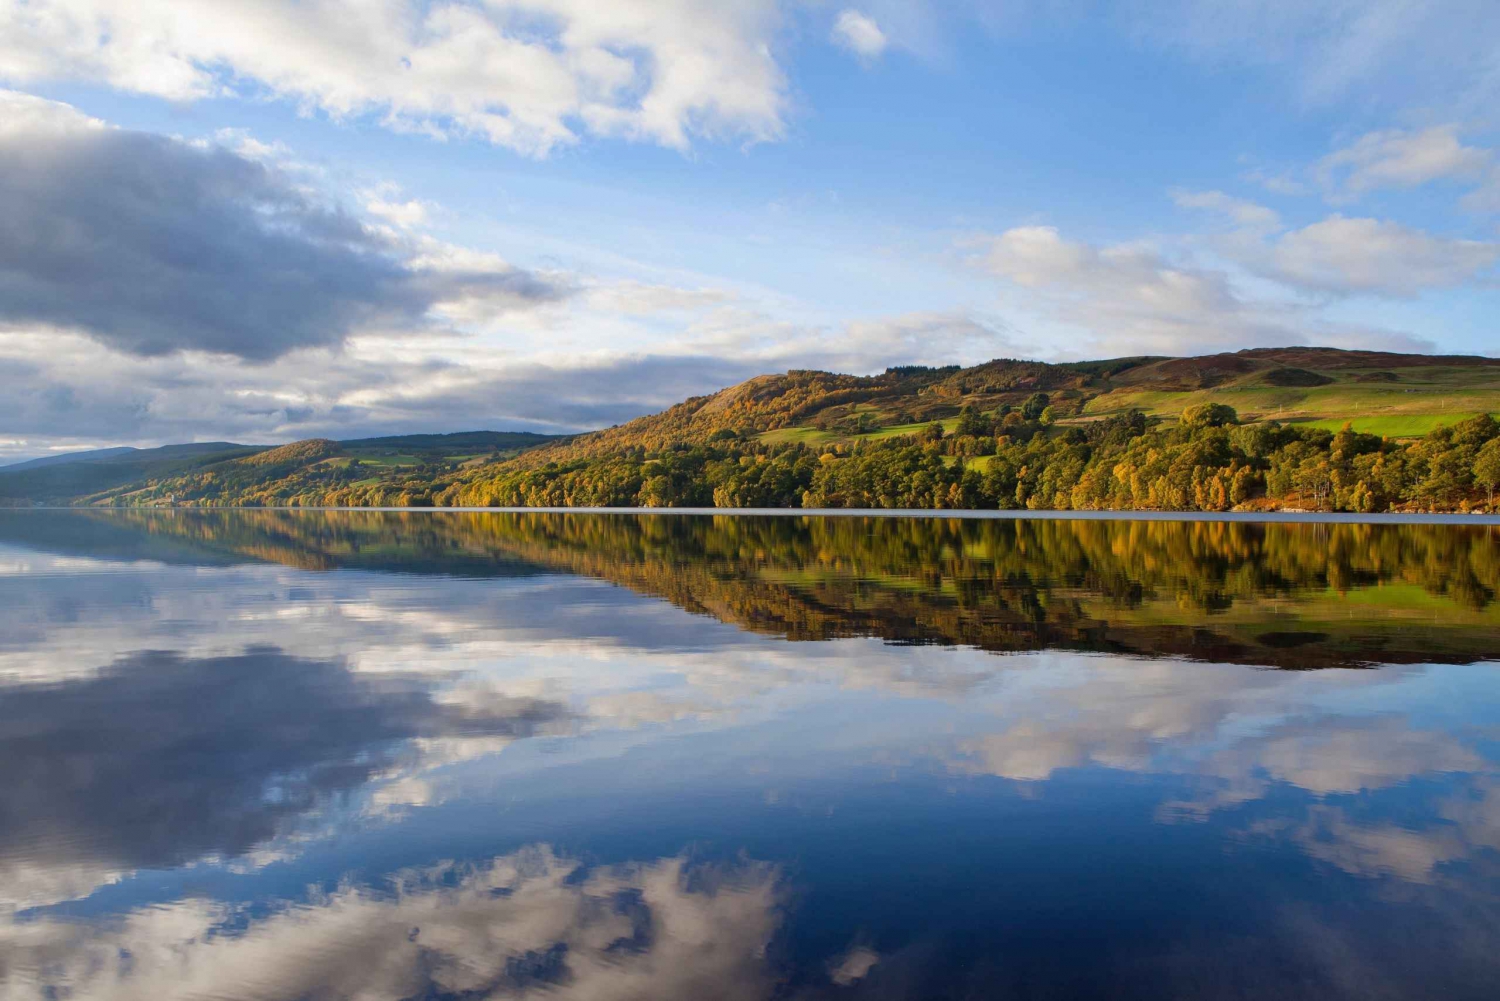 Saindo de Edimburgo: Loch Ness e Highlands Tour com cruzeiro guiado